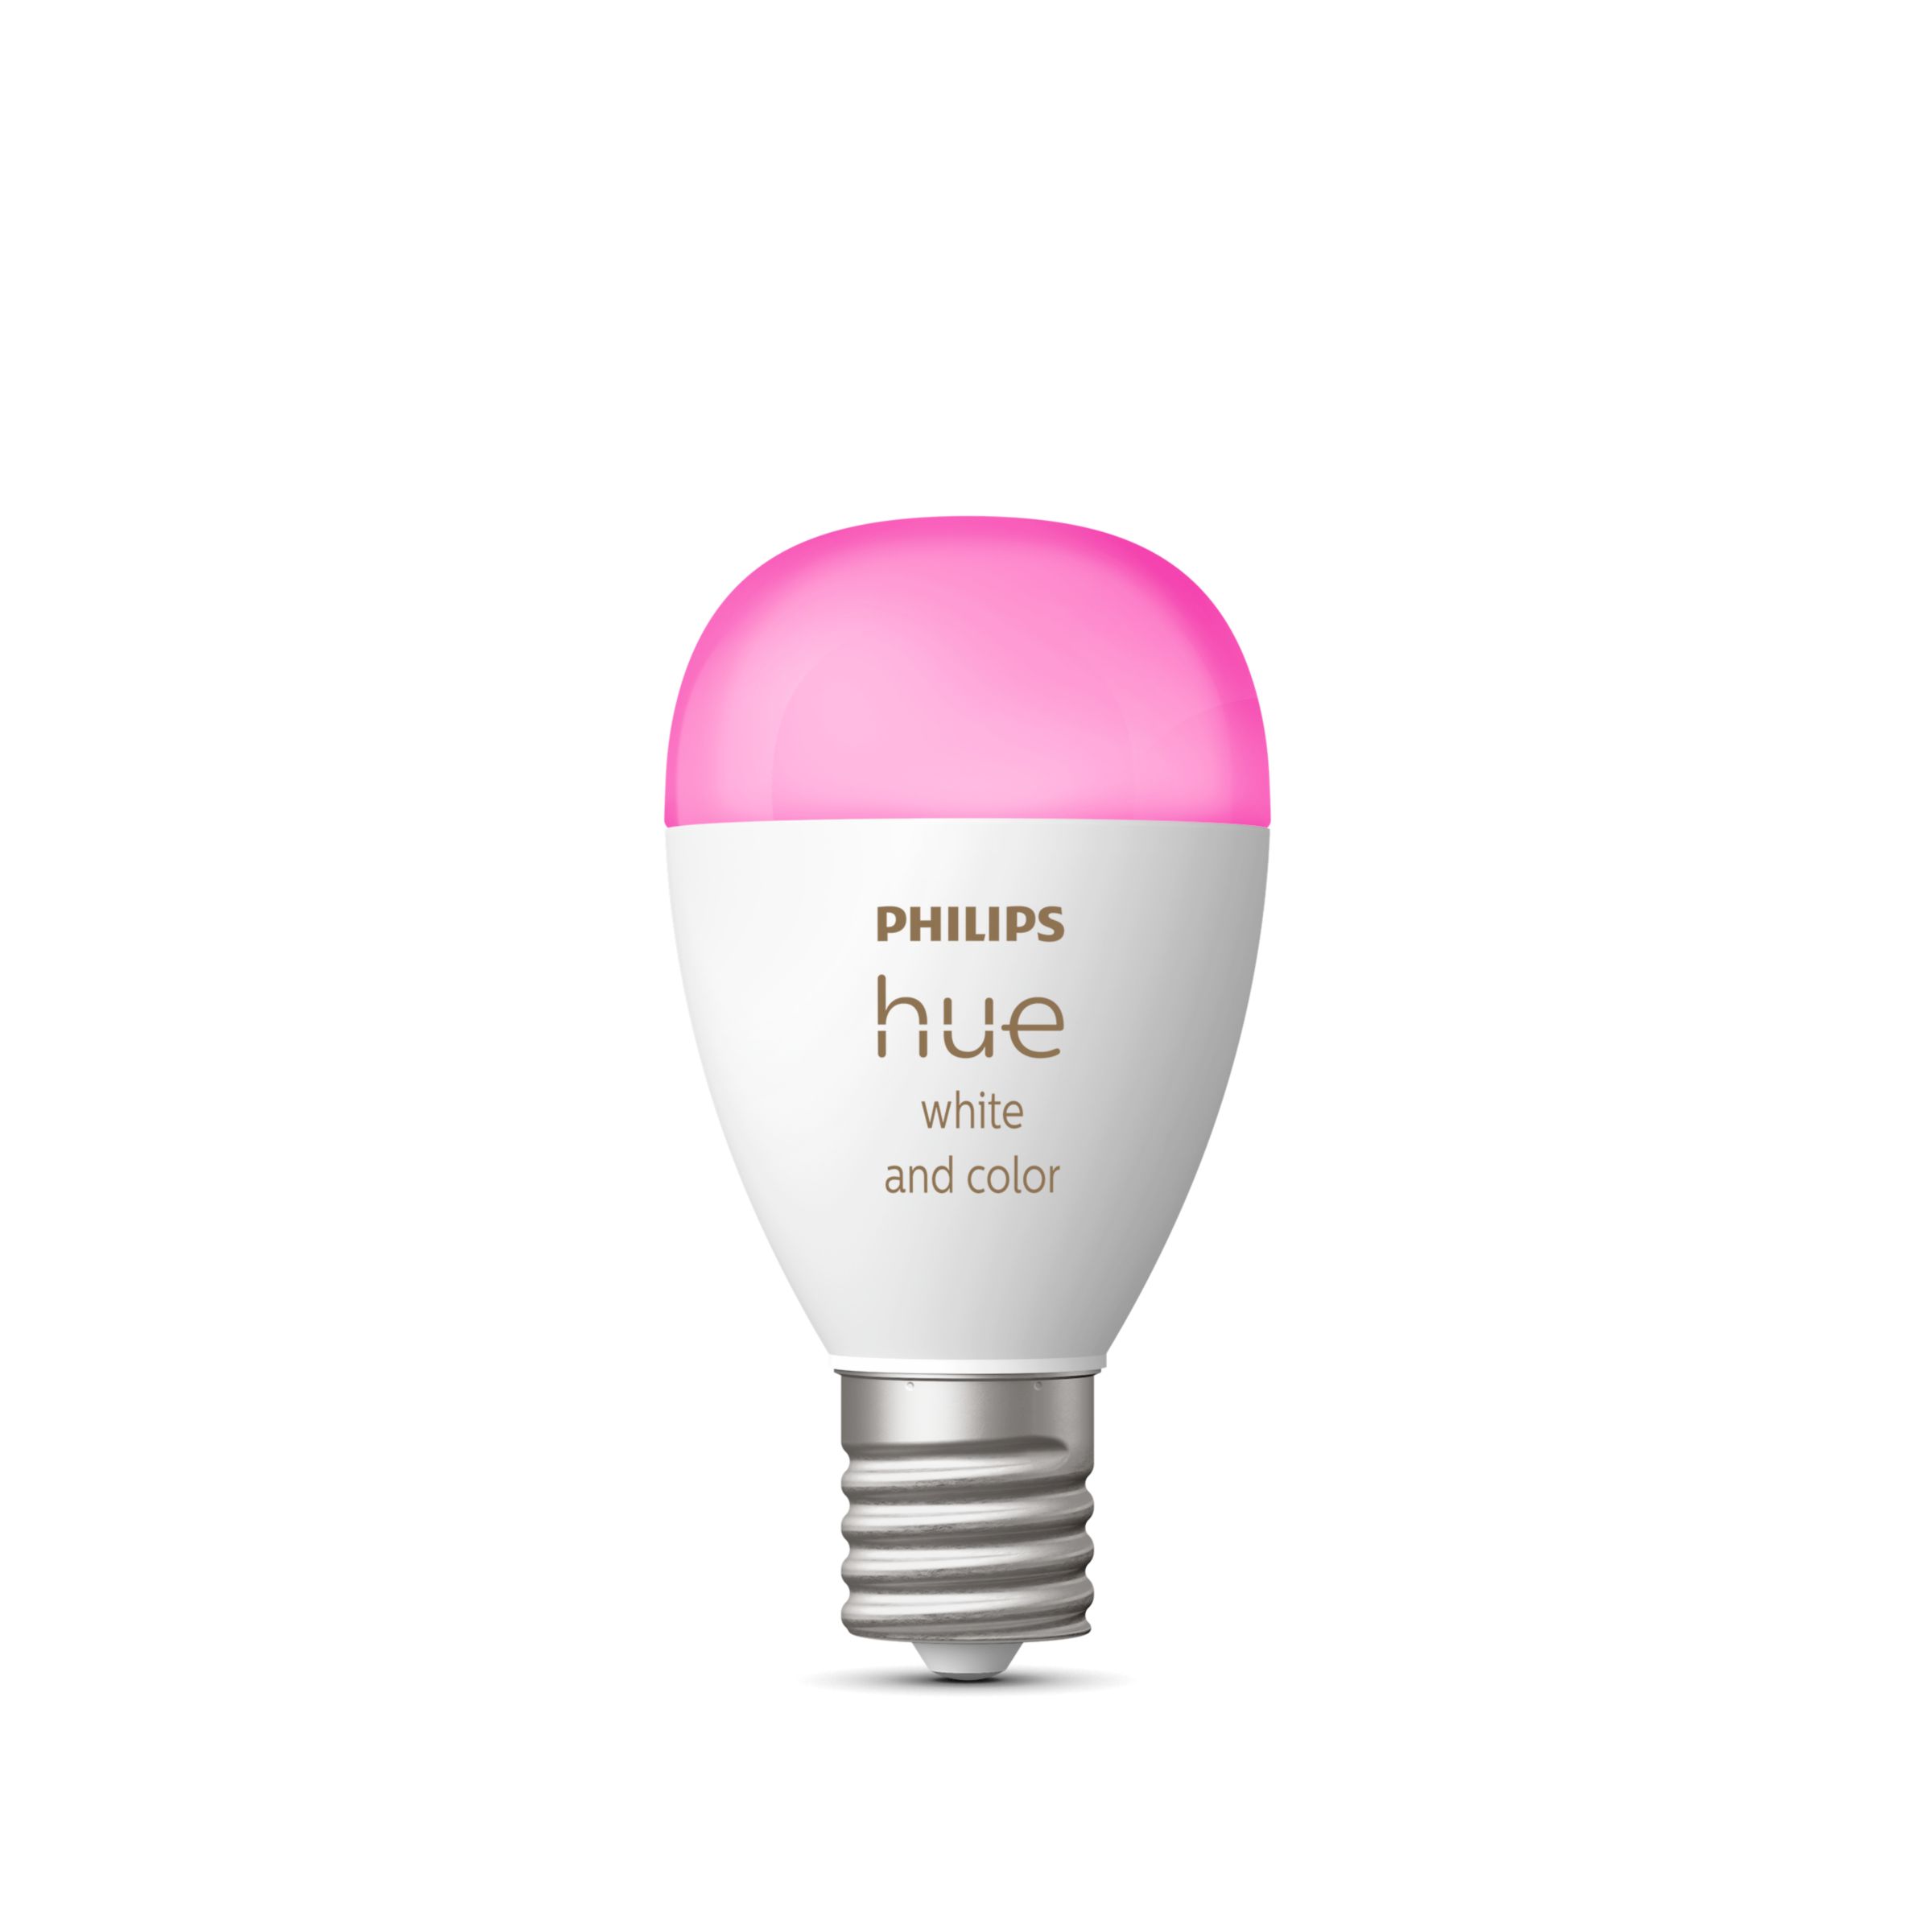 柔らかな質感の Philips LED Hue(フィリップスヒュー) 電球 スマート